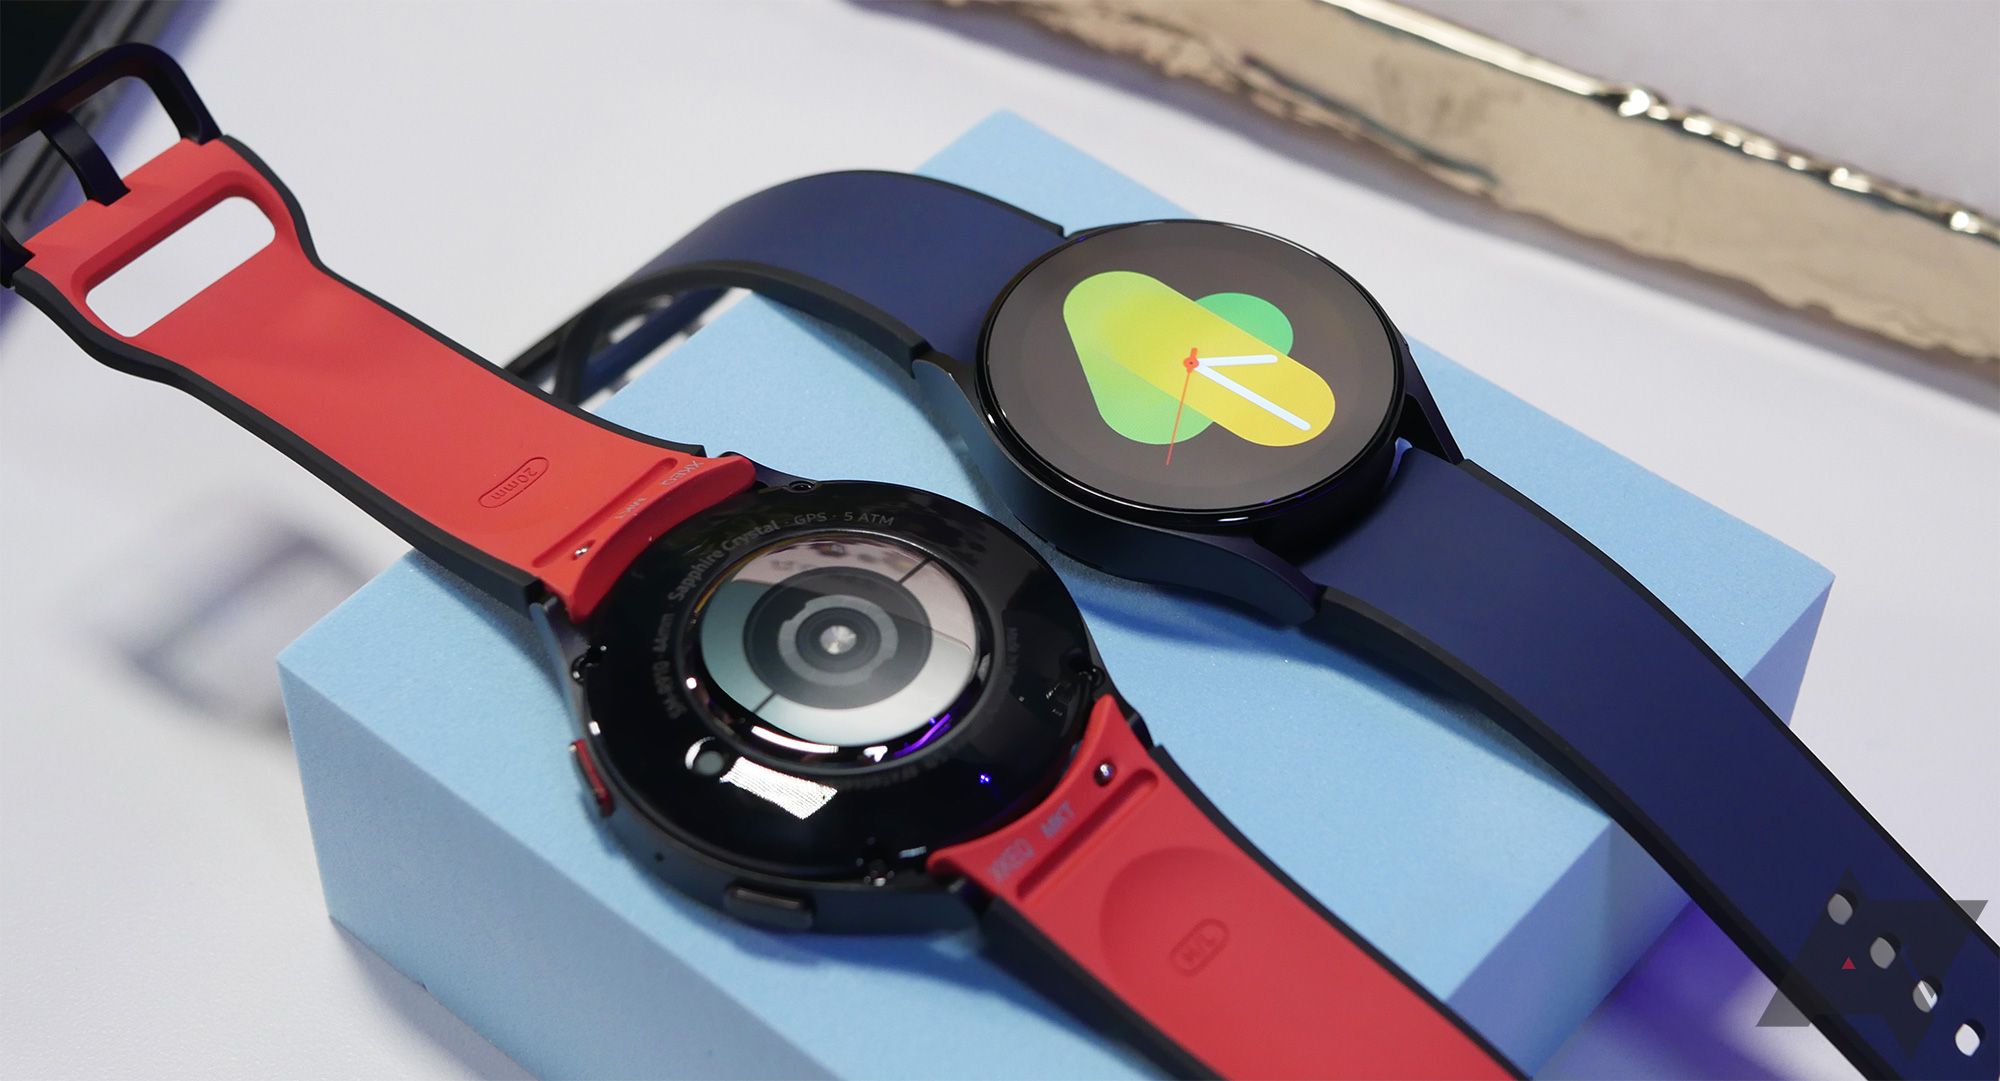 dua jam tangan pintar berada di blok biru pastel.  Satu memiliki tampilan yang menyala;  yang lainnya menghadap ke bawah. 